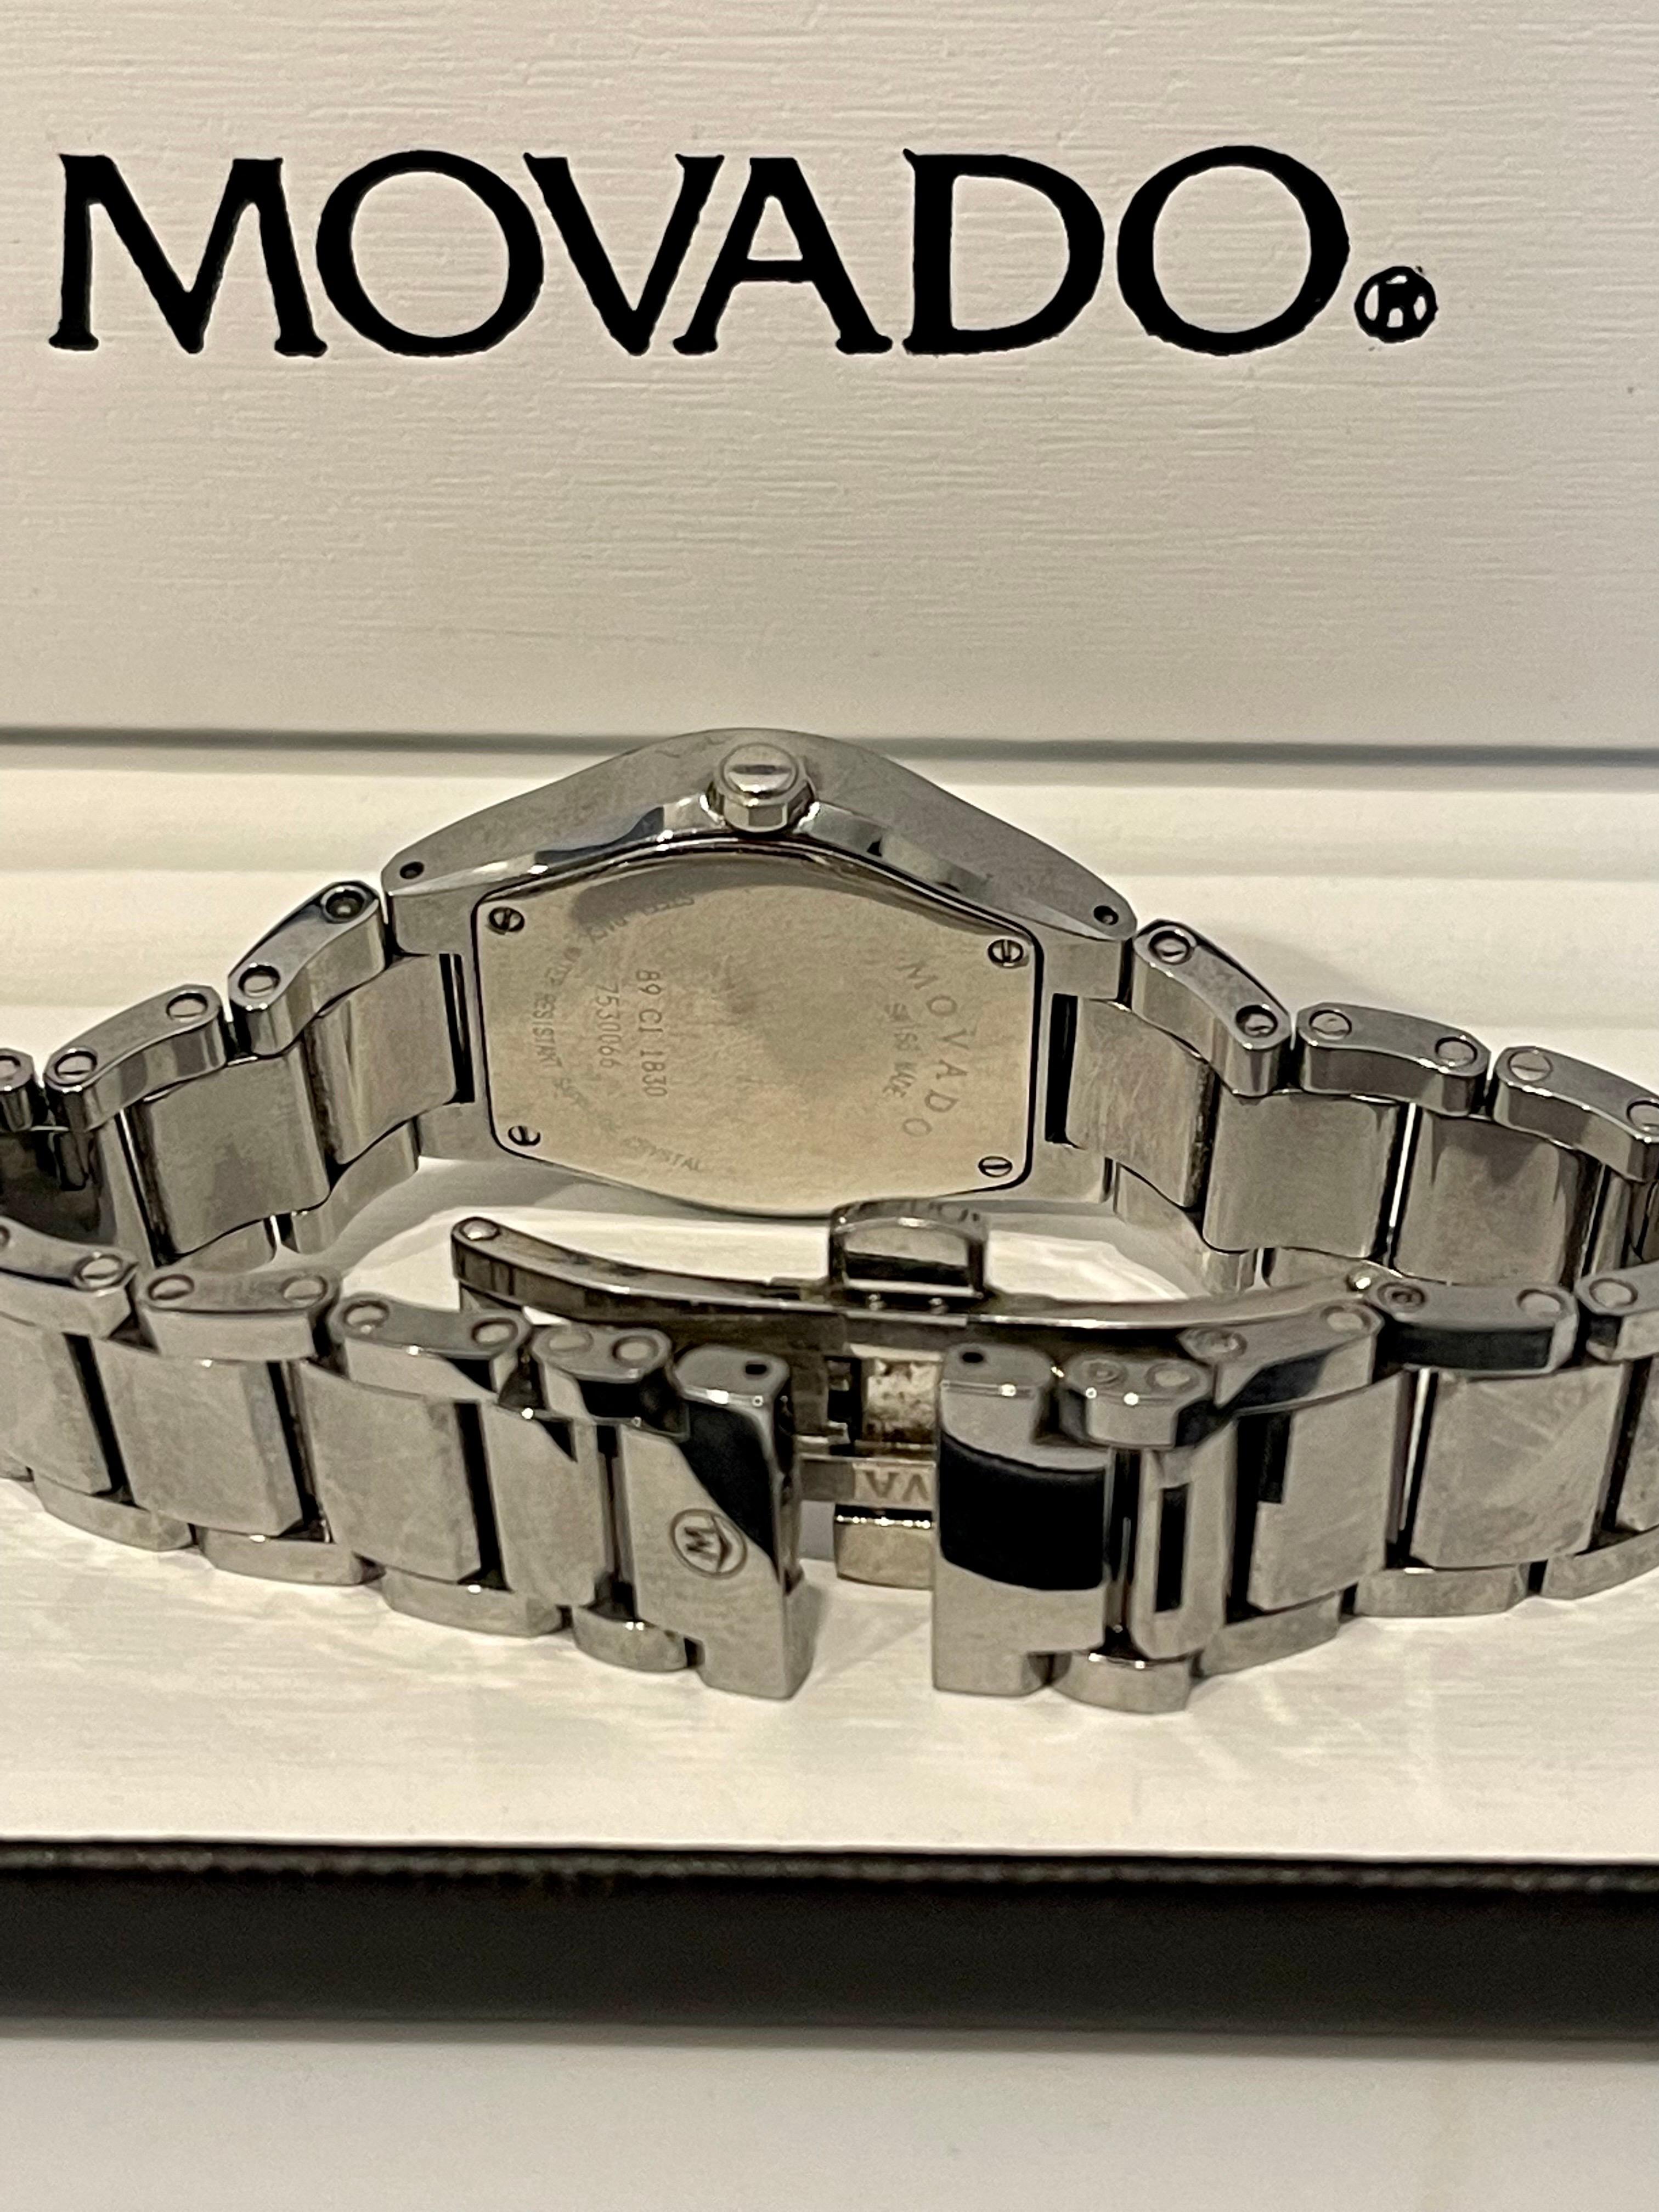  Authentique montre à quartz Movado pour femmes avec cadran noir Stiri, bracelet en acier inoxydable Pour femmes 